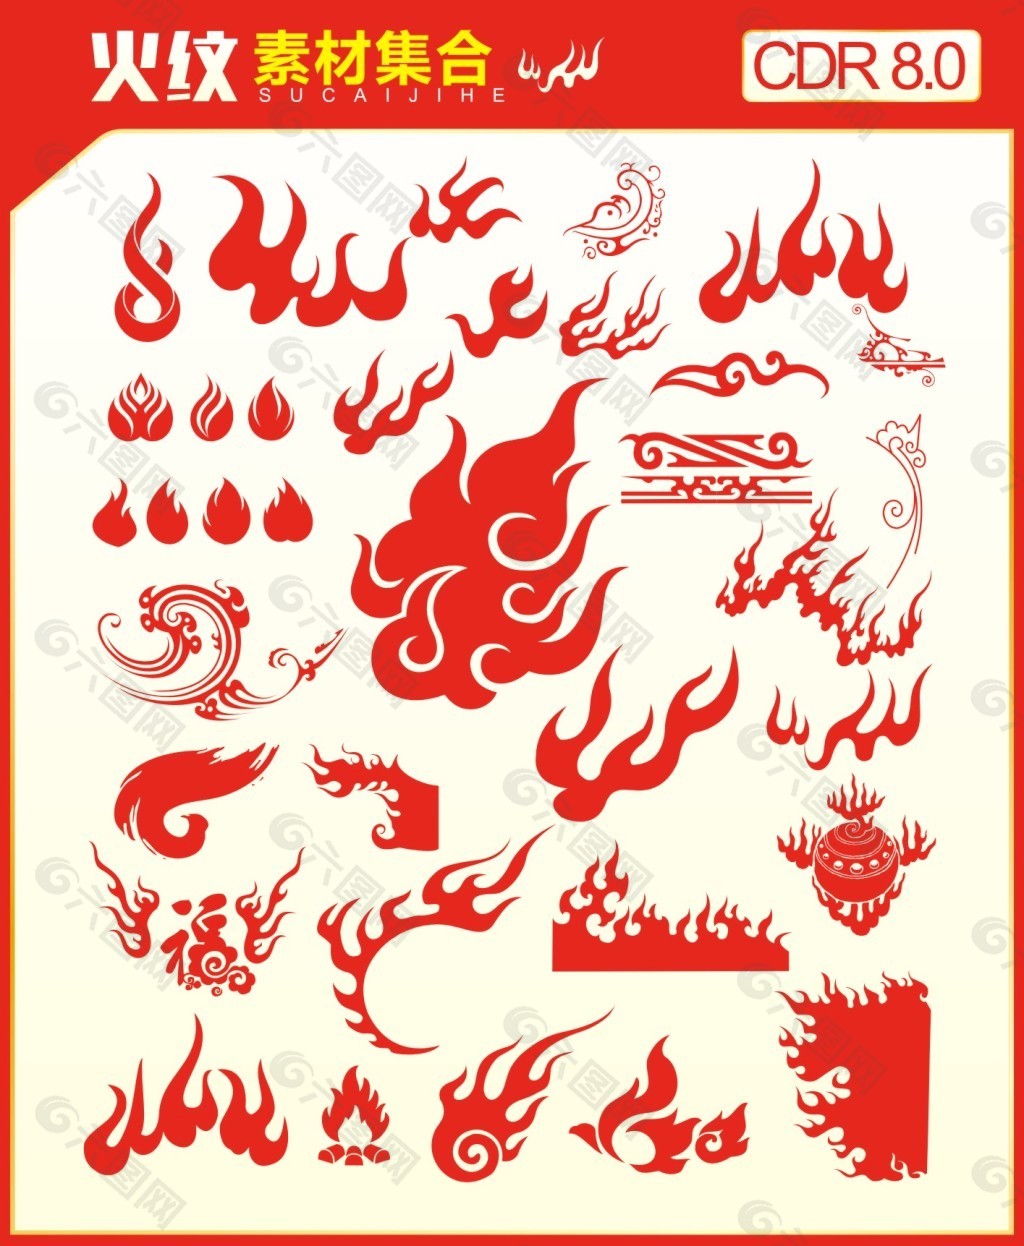 火图标,火焰,火圈,1,火底纹,传统纹理,传统图案,奥运火炬,古代火纹,火